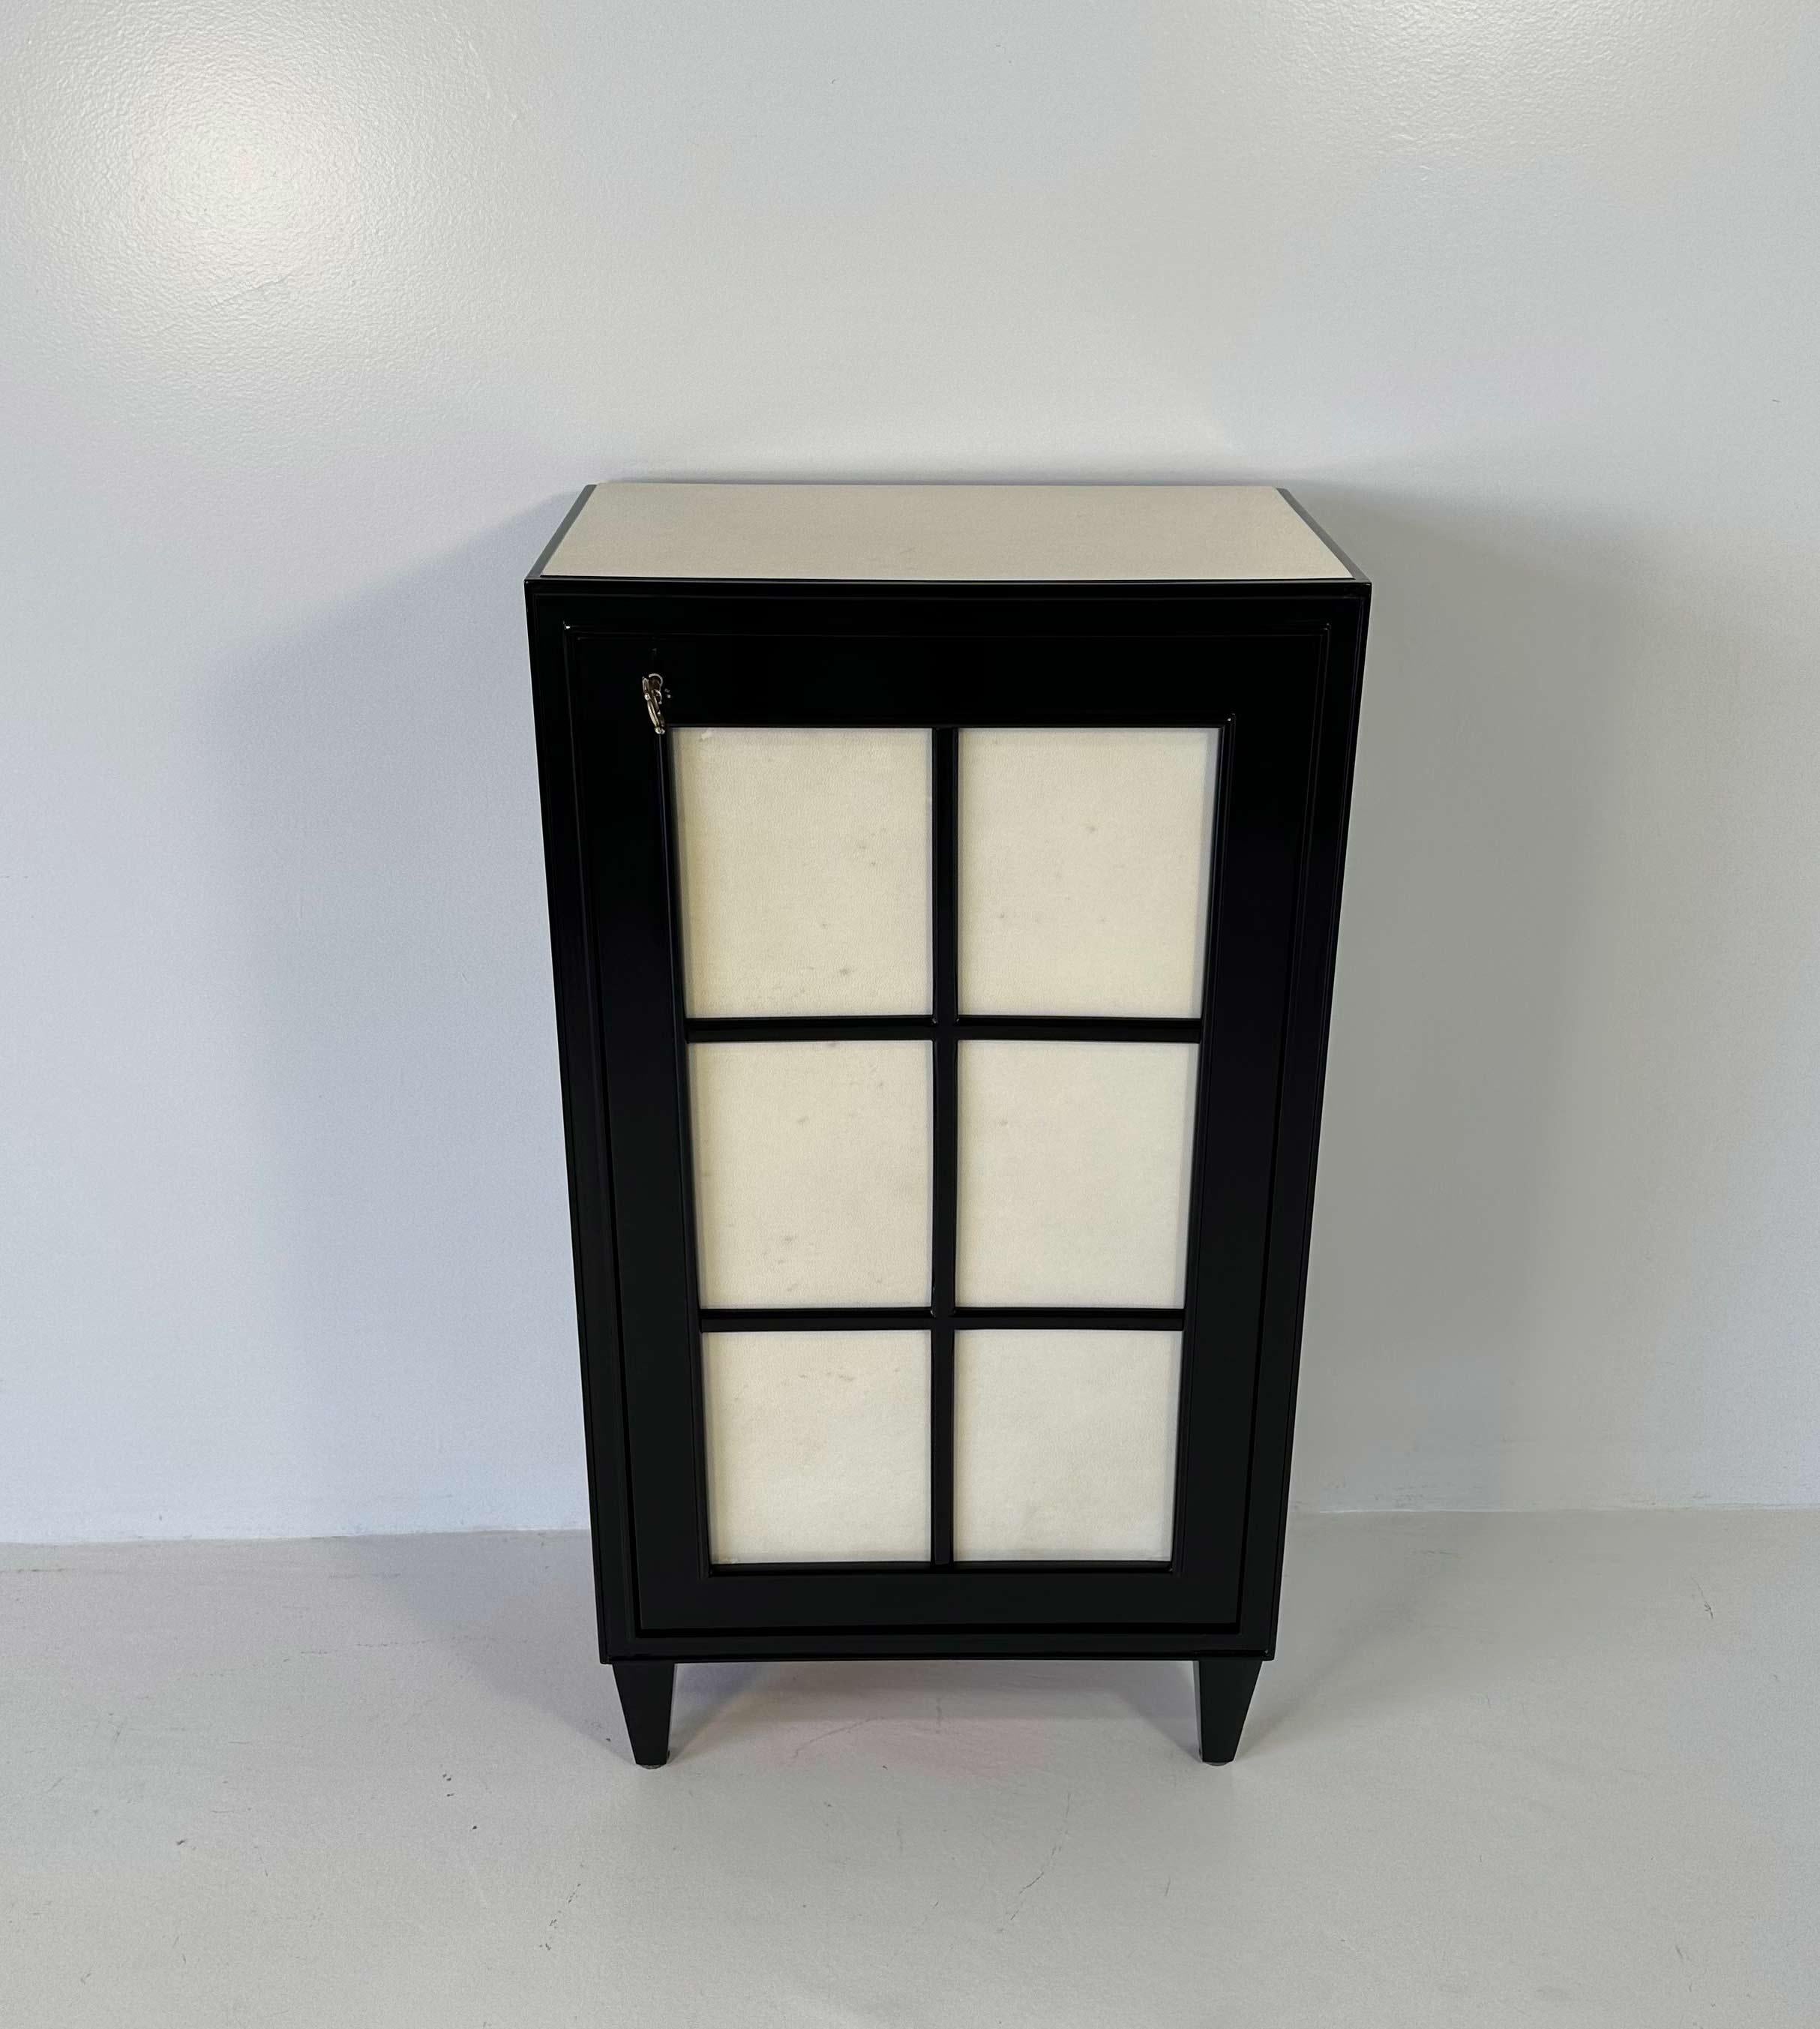 Dieser kleine Art-Déco-Schrank wurde in den 1940er Jahren in Italien hergestellt. 
Er ist komplett schwarz lackiert, während die Tür und der Deckel aus Pergament sind. Schlüssel und Schlüsselloch sind aus Messing. 
Vollständig restauriert.